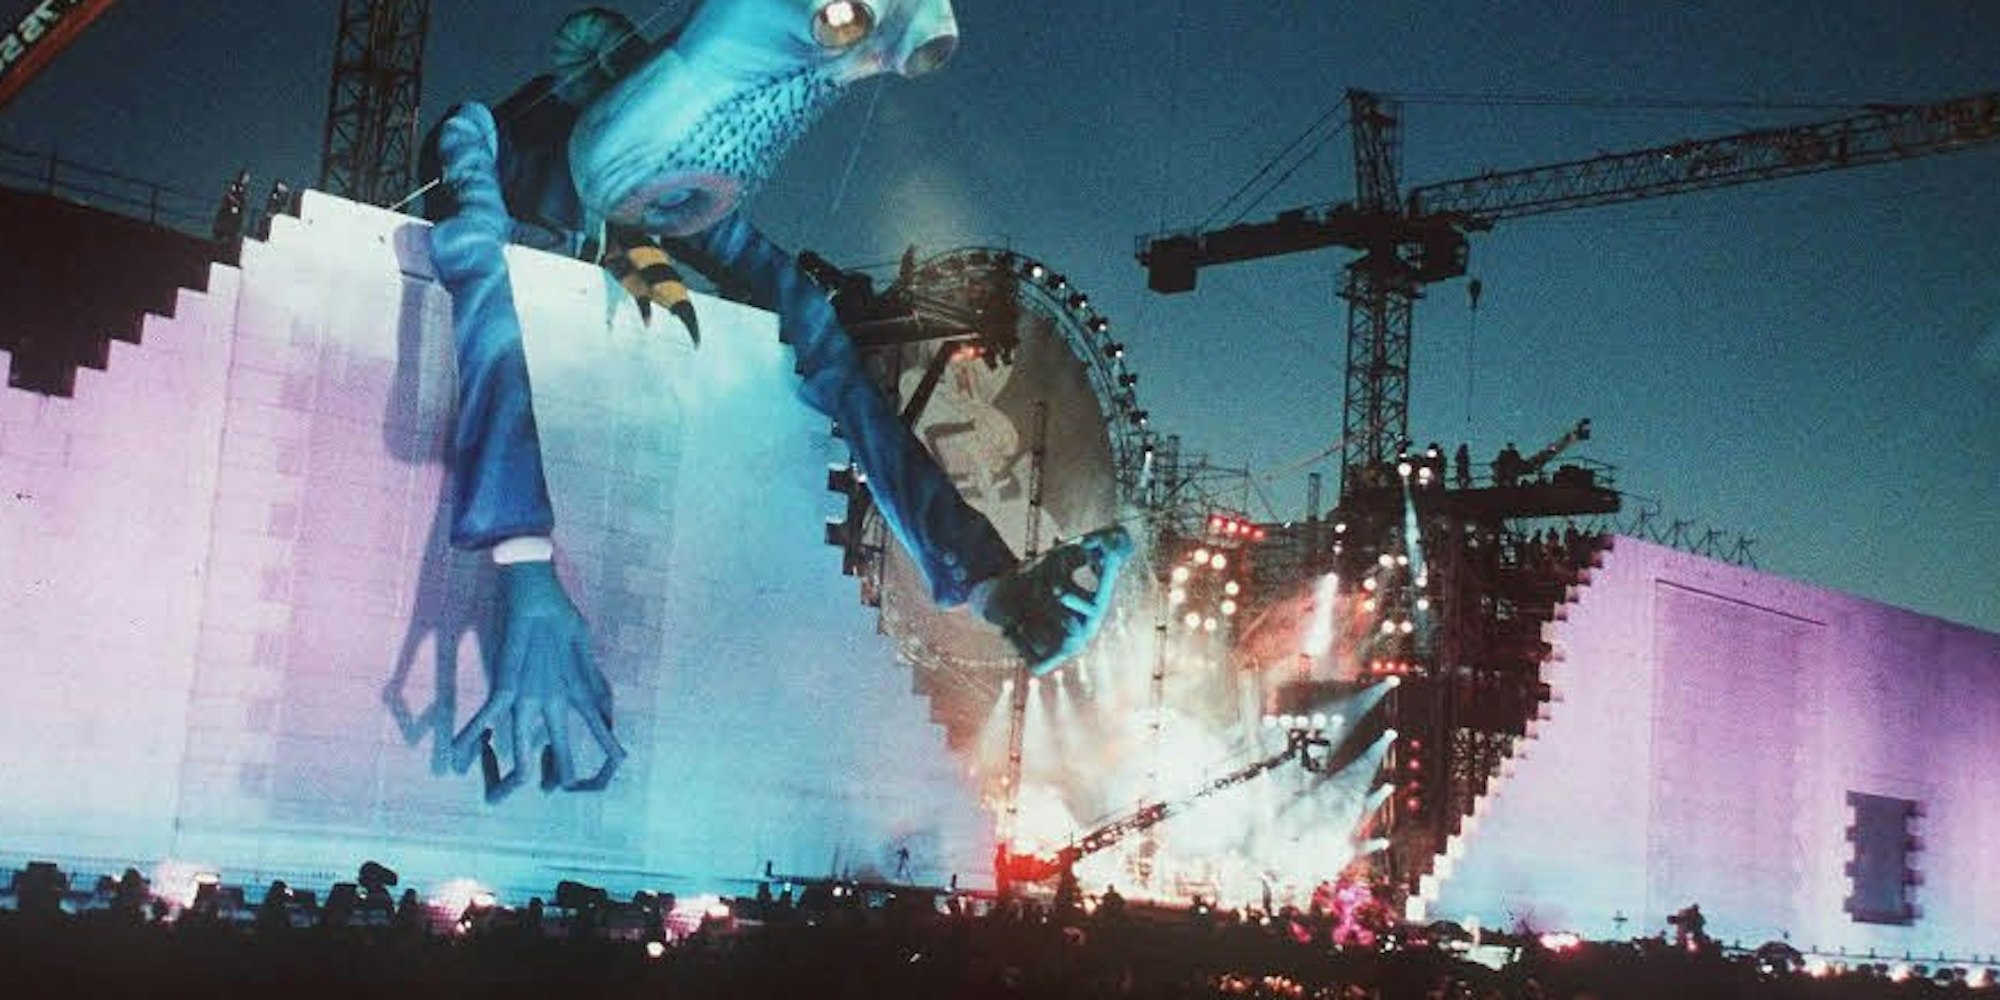 Aufgeblasen: Eine überdimensionale Figur stellt den bösen Lehrer dar, eine zentrale Figur in Roger Waters’ Wall-Geschichte.